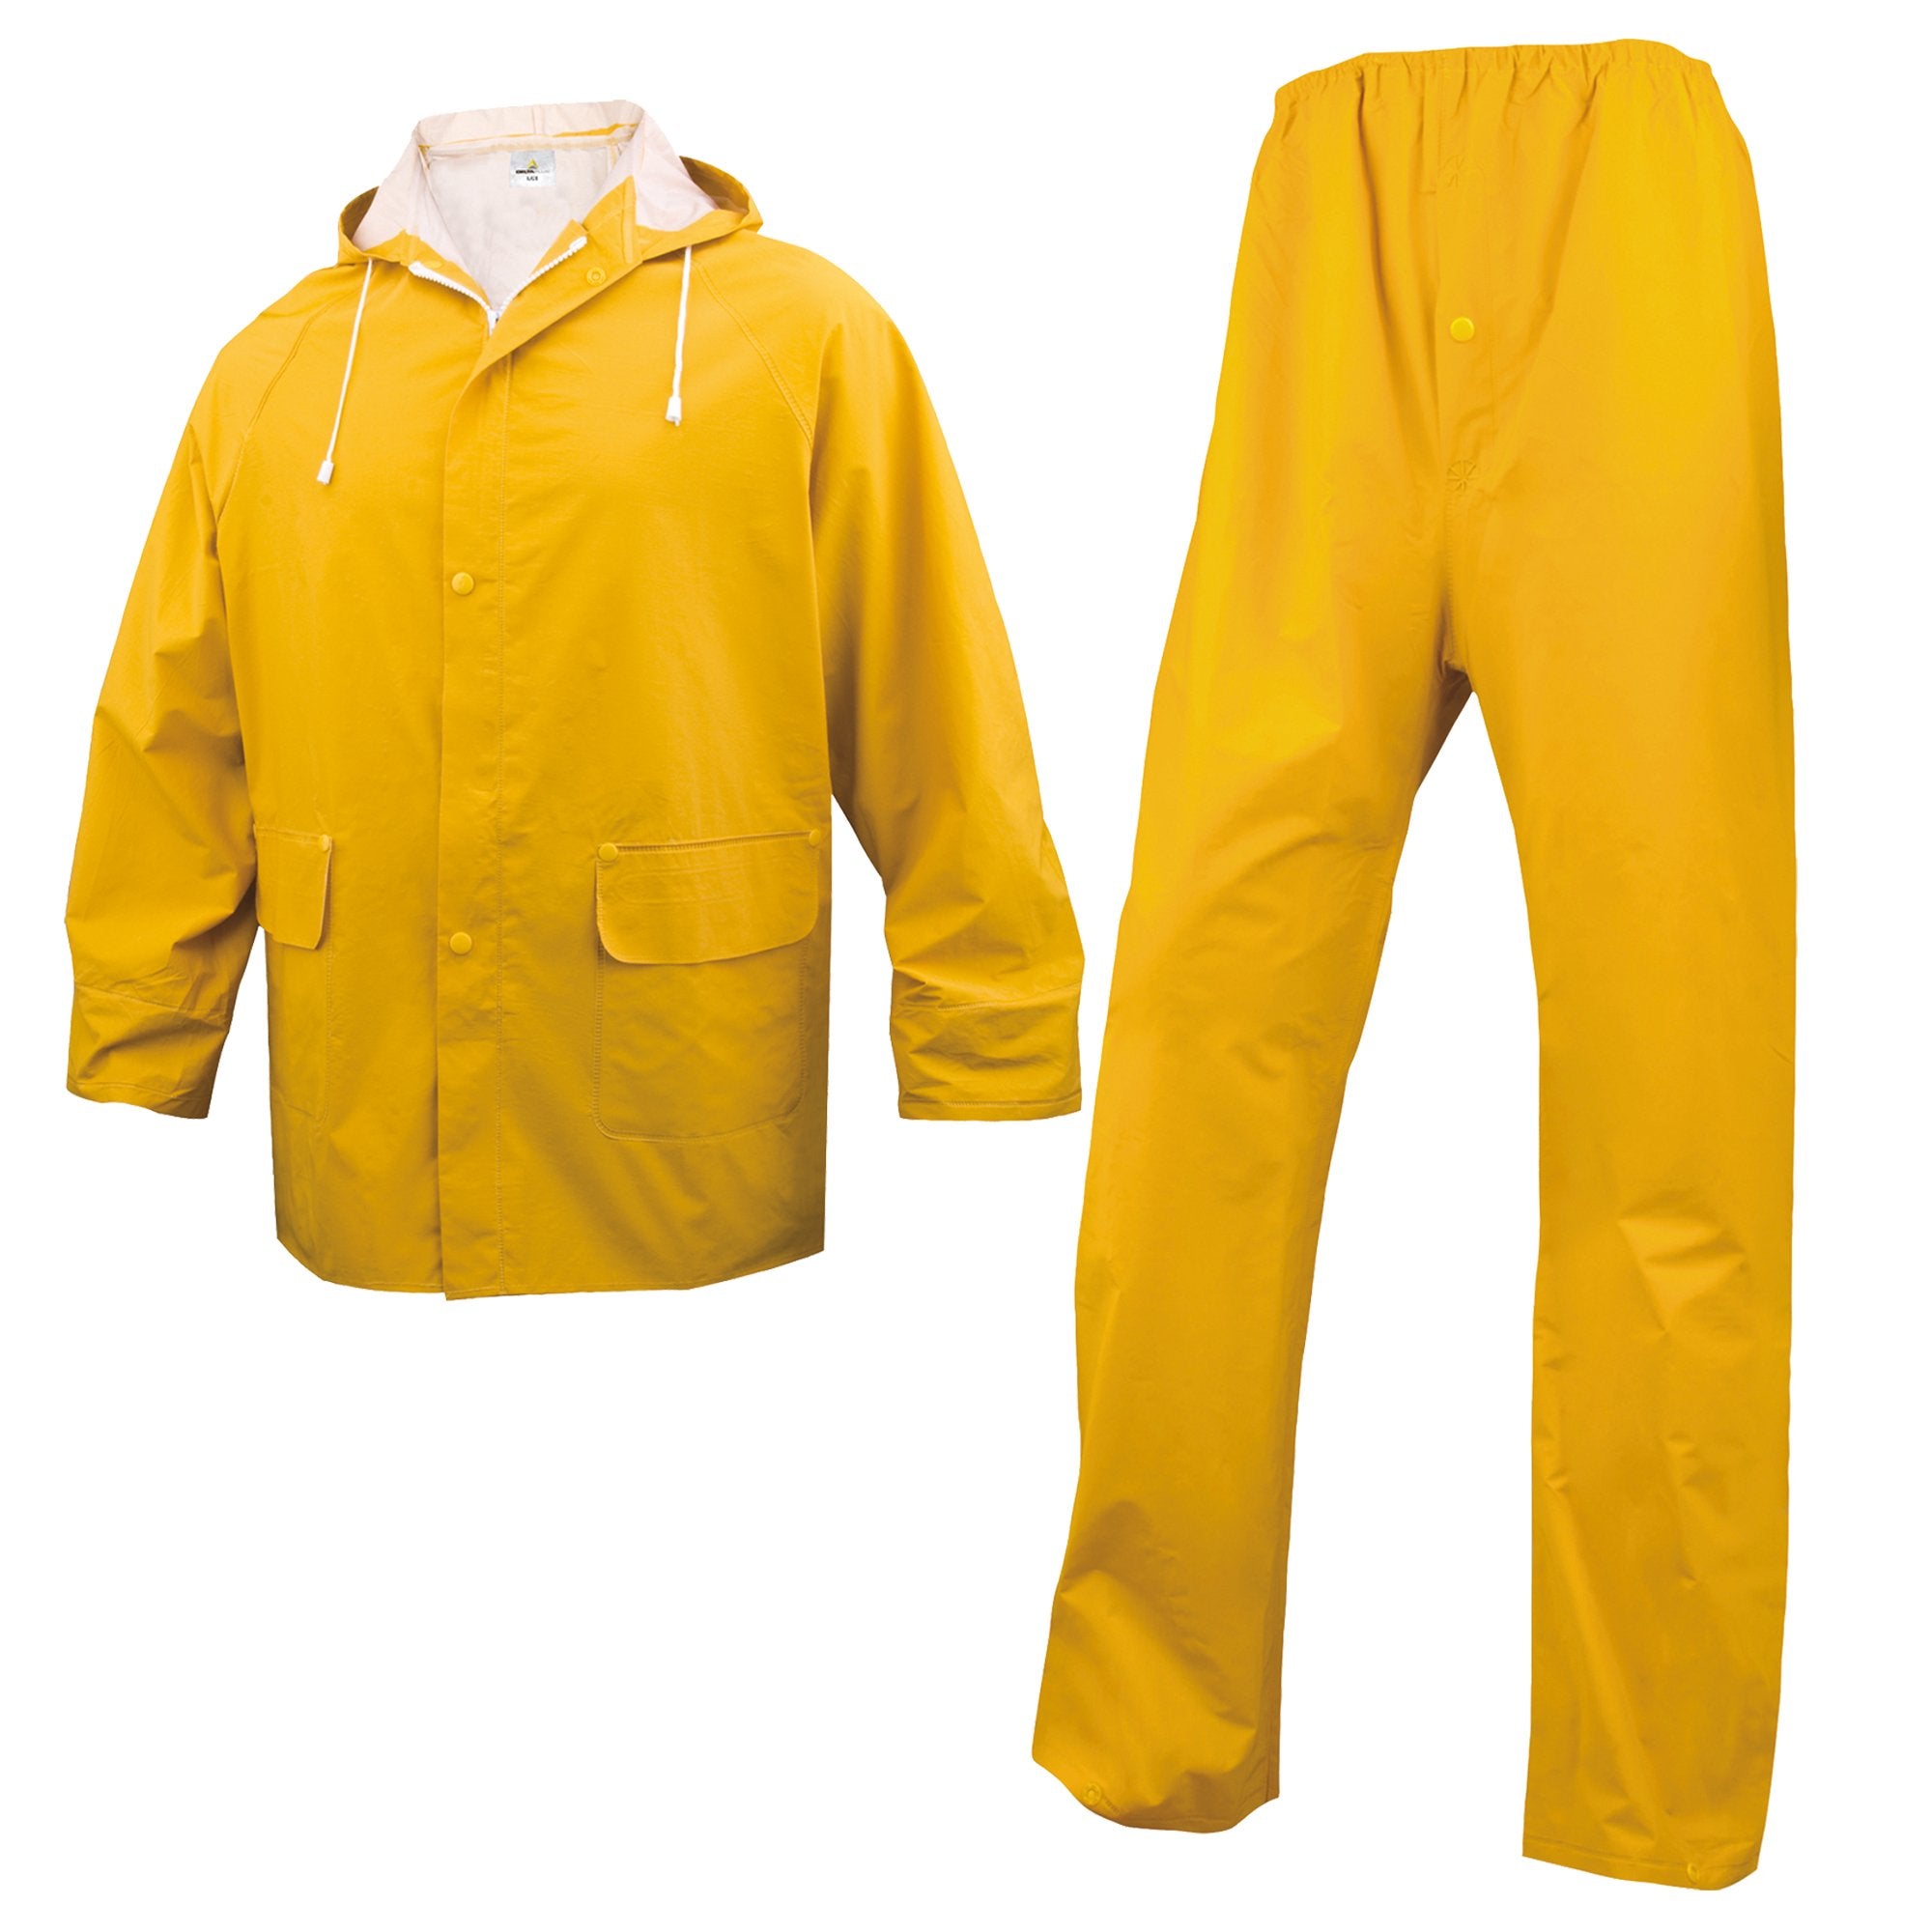 deltaplus-completo-impermeabile-en304-tg-m-giallo-giaccapantalone